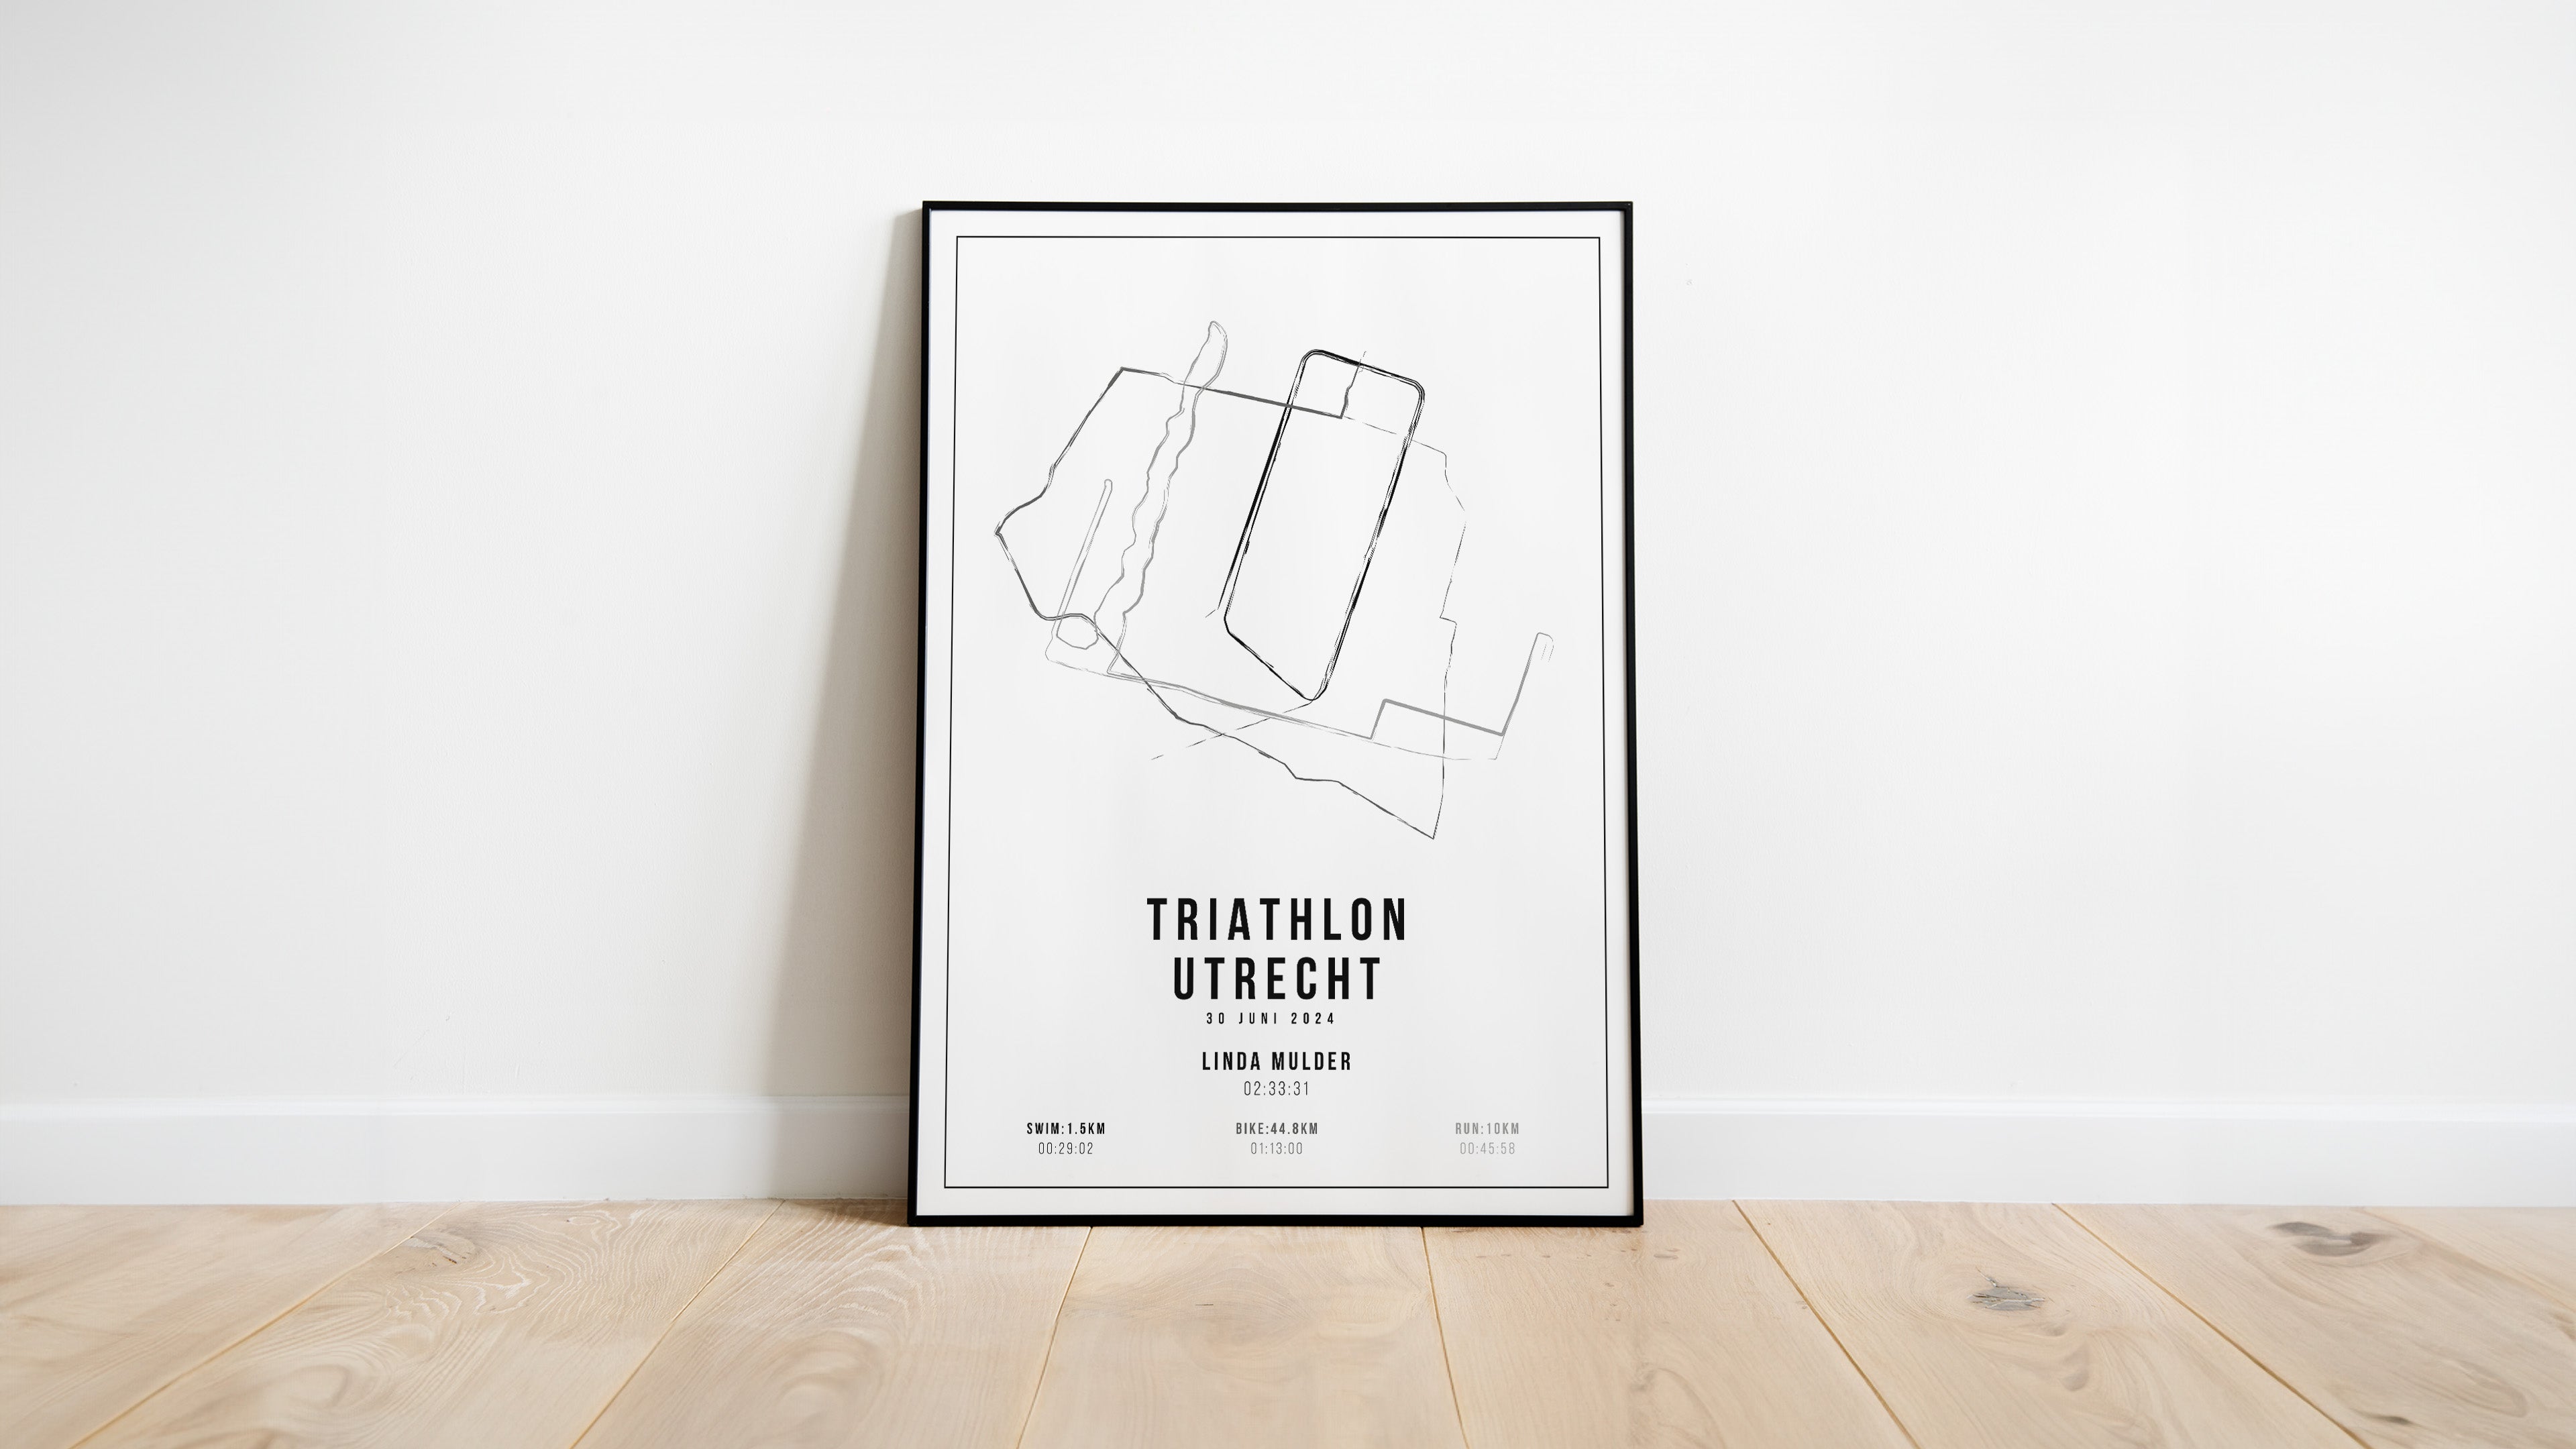 Triathlon Utrecht - Handmade Drawing - Poster